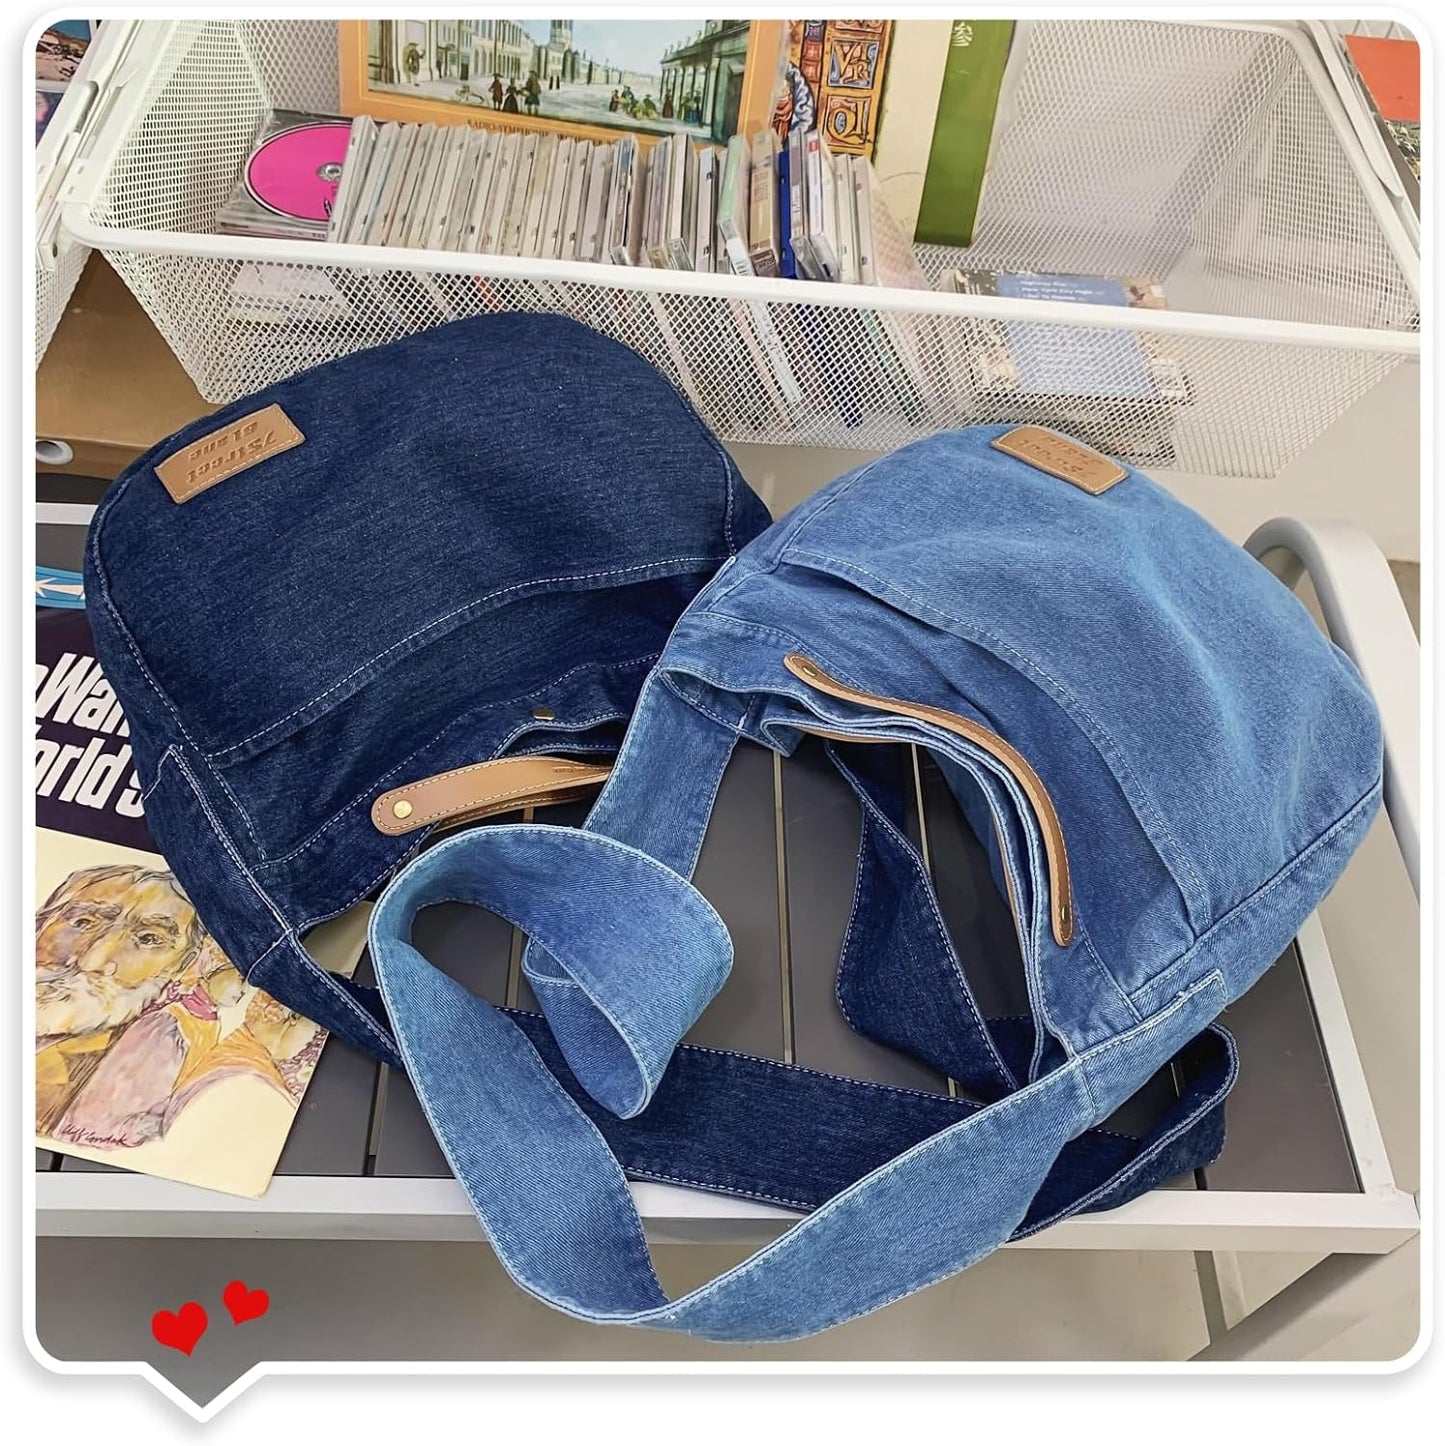 Leaper Denim Tote Bag Denim Shoulder Bag Lightweight Retro Travel Crossbody Hobo Handbag for Women